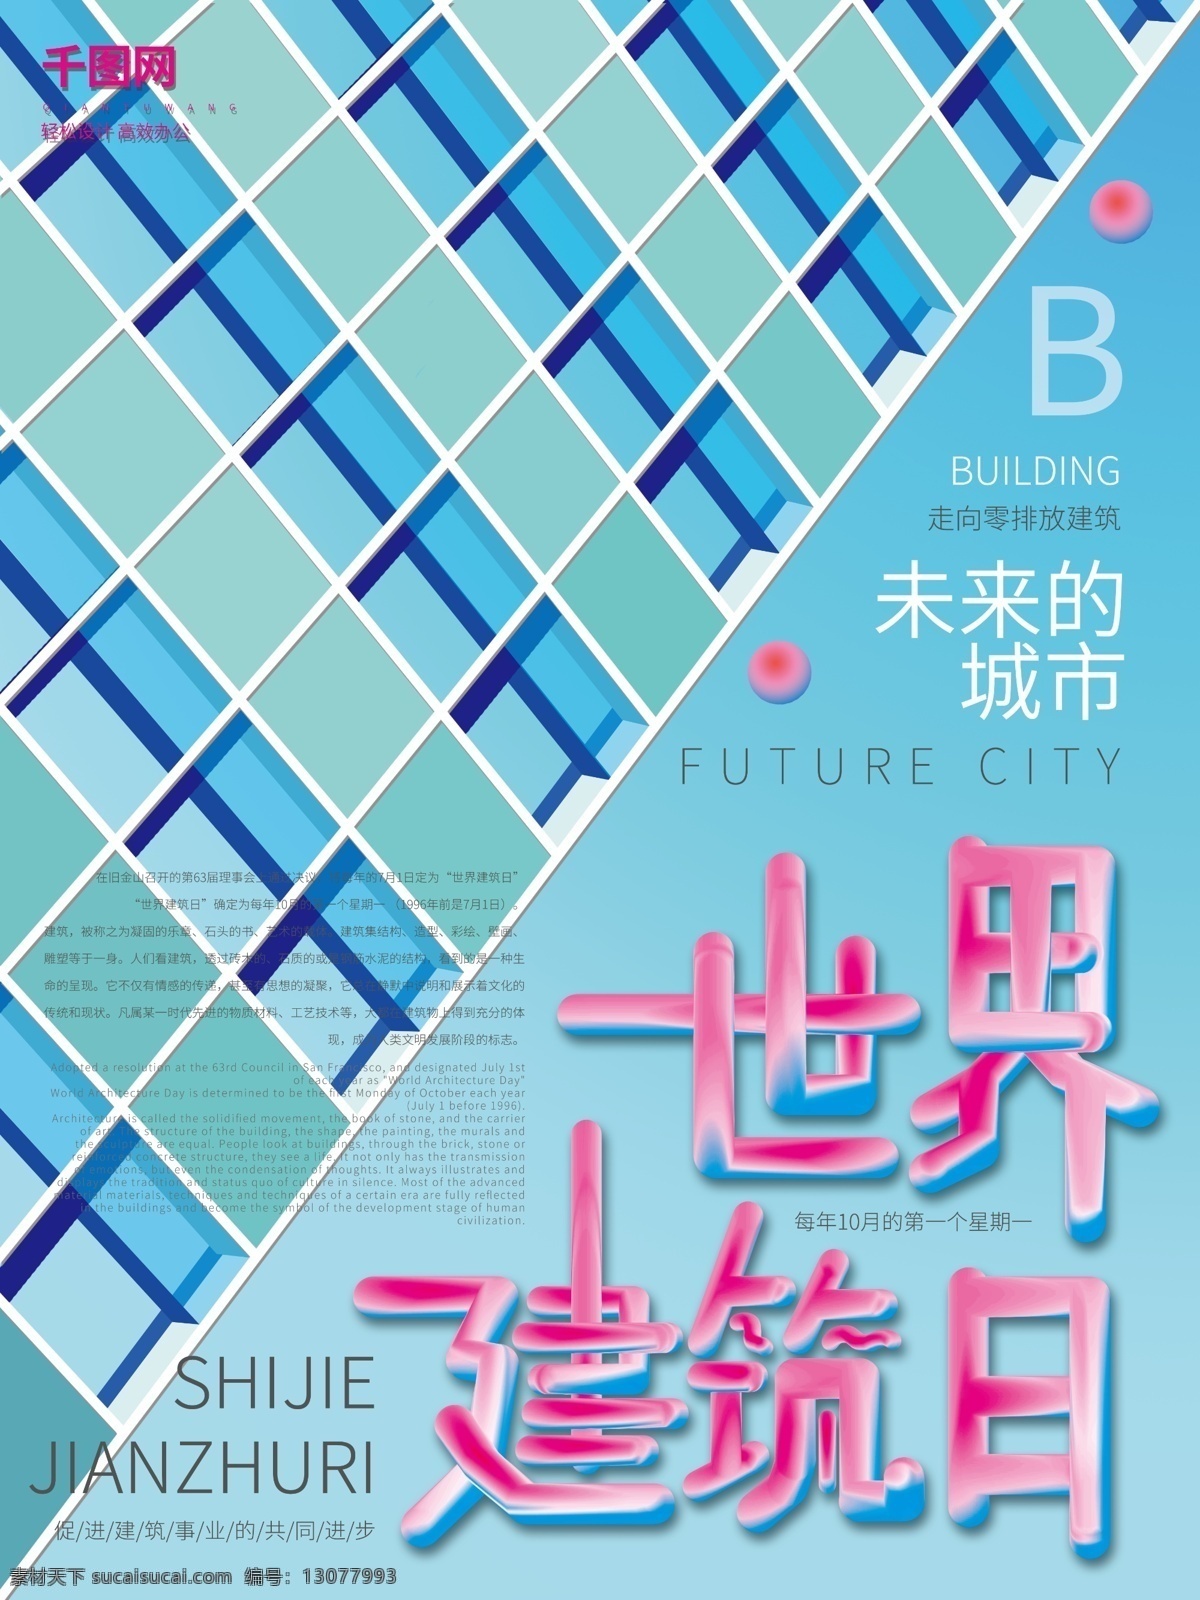 蓝色 简约 精致 世界 建筑 日 海报 城市 科技 世界建筑日 建筑设计 未来城市 未来科技 室内设计 室外设计 家具设计 建筑宏伟 世界建筑